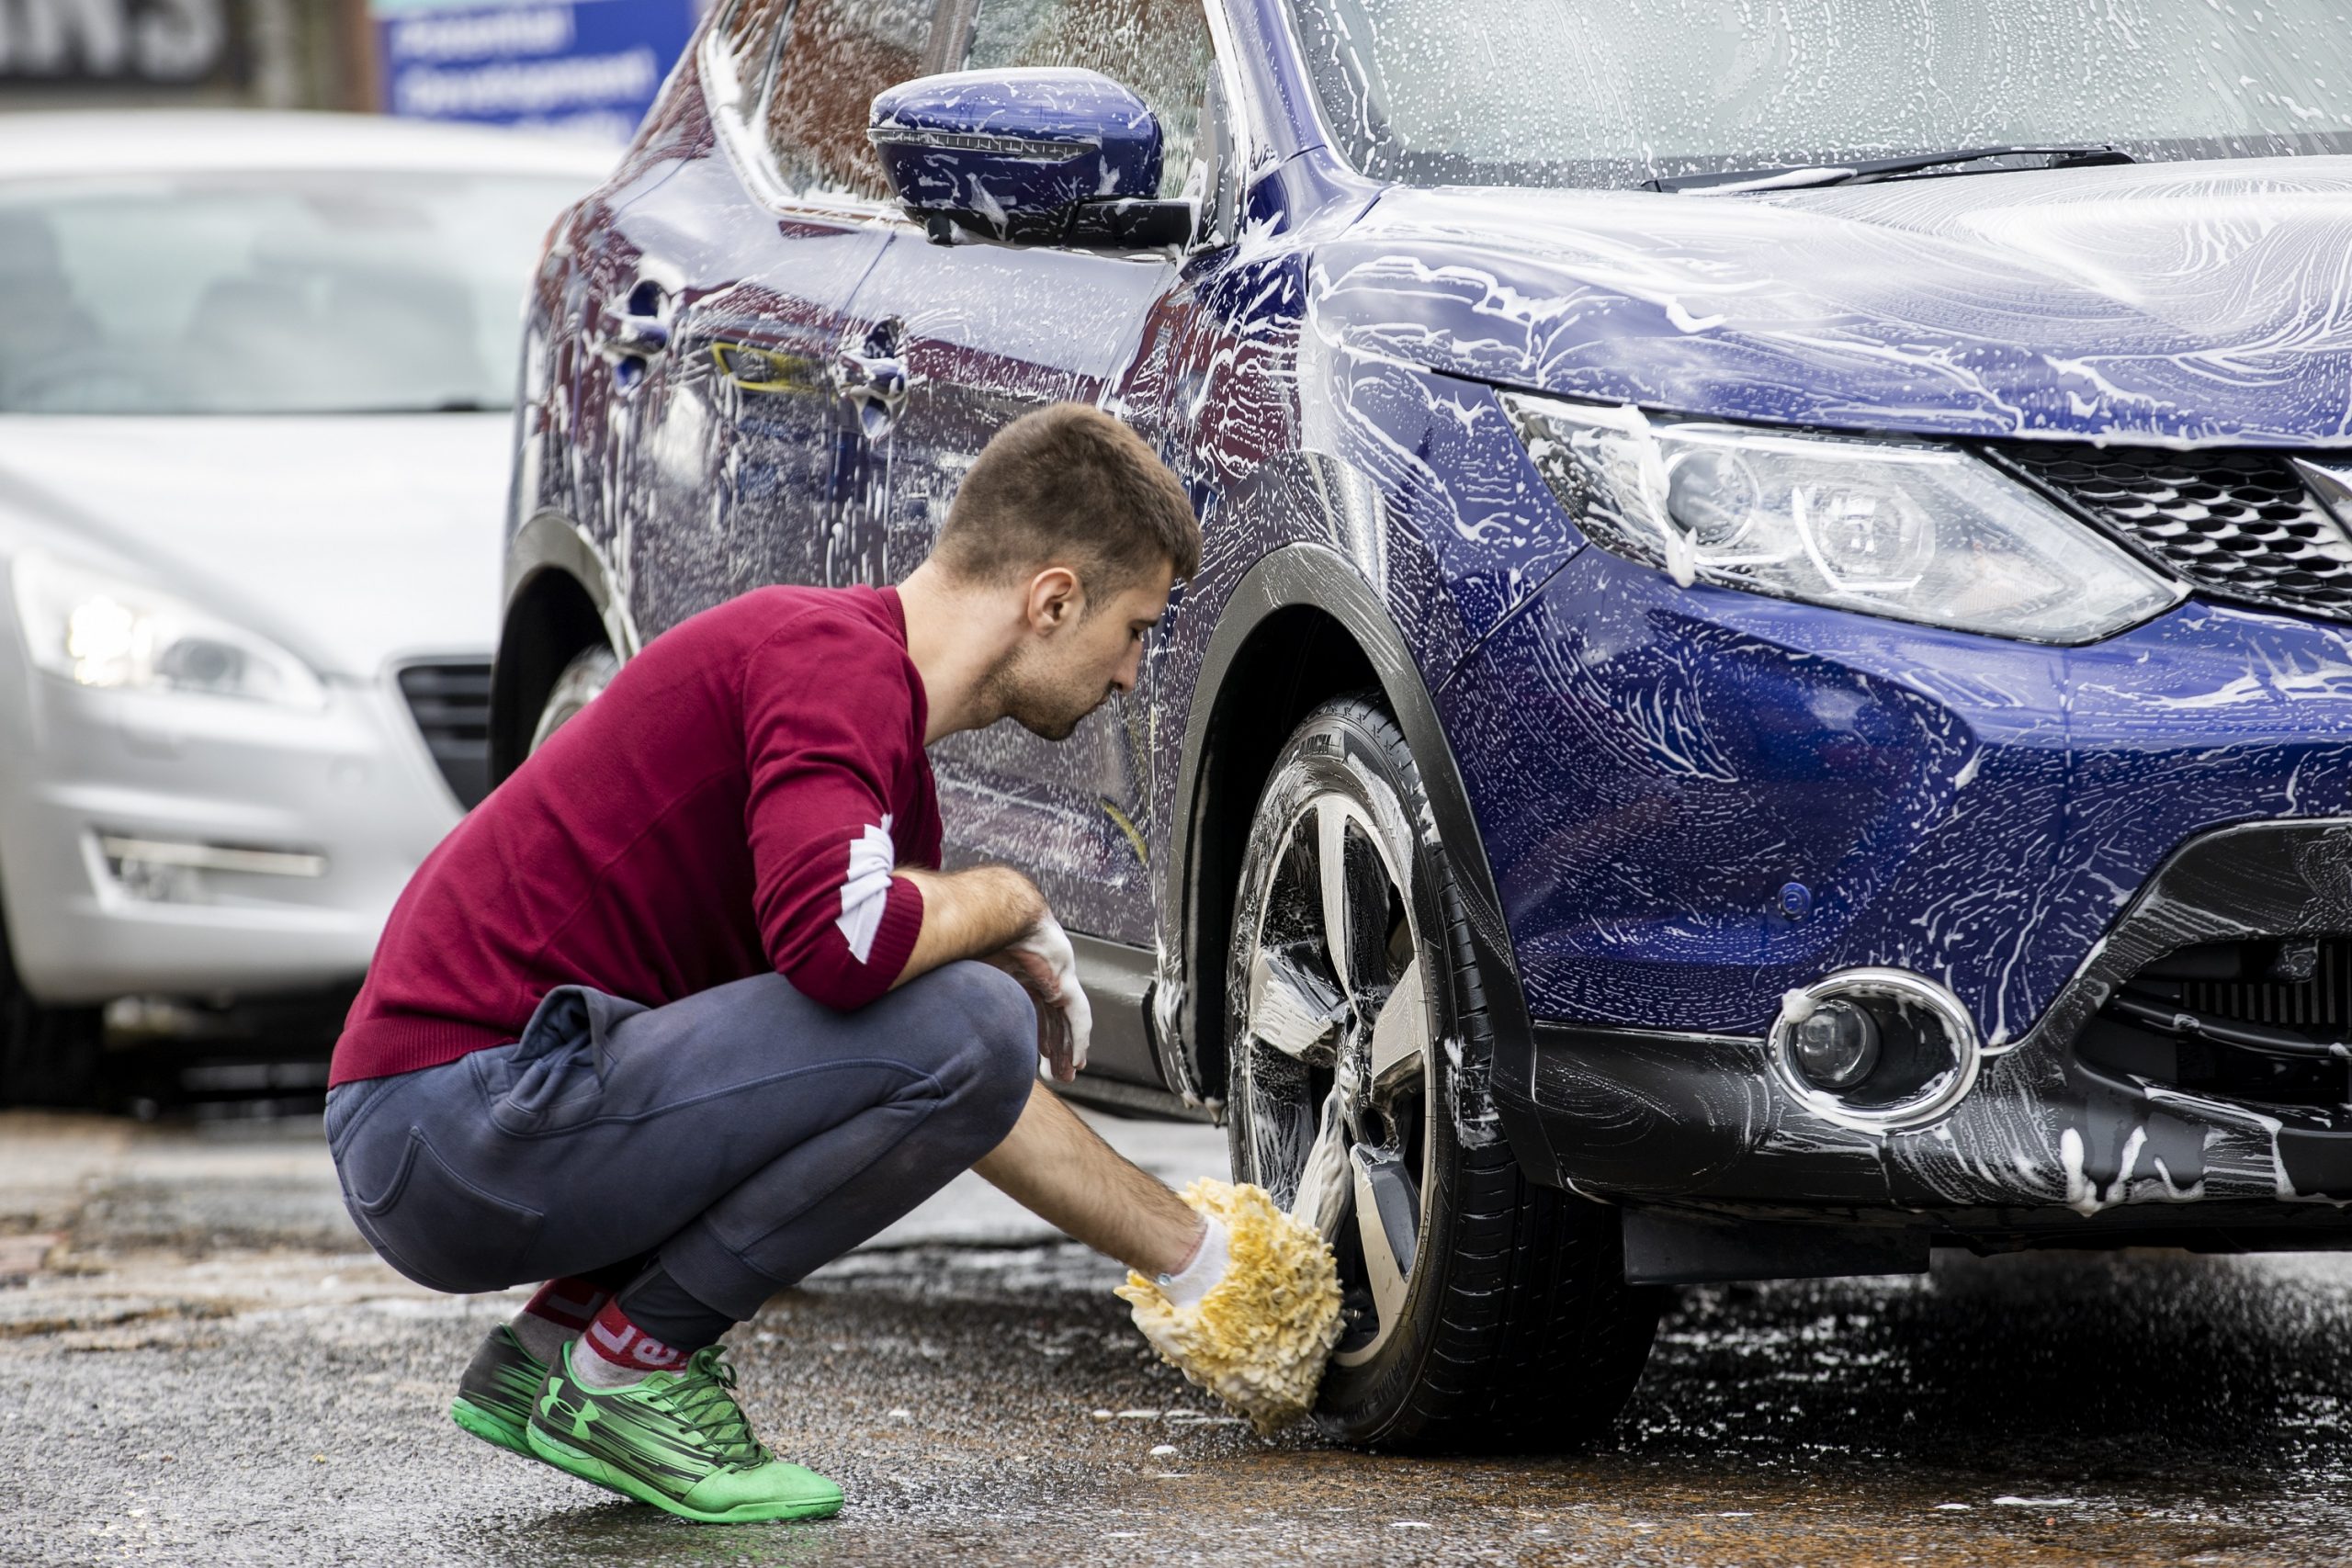 A man washes his car